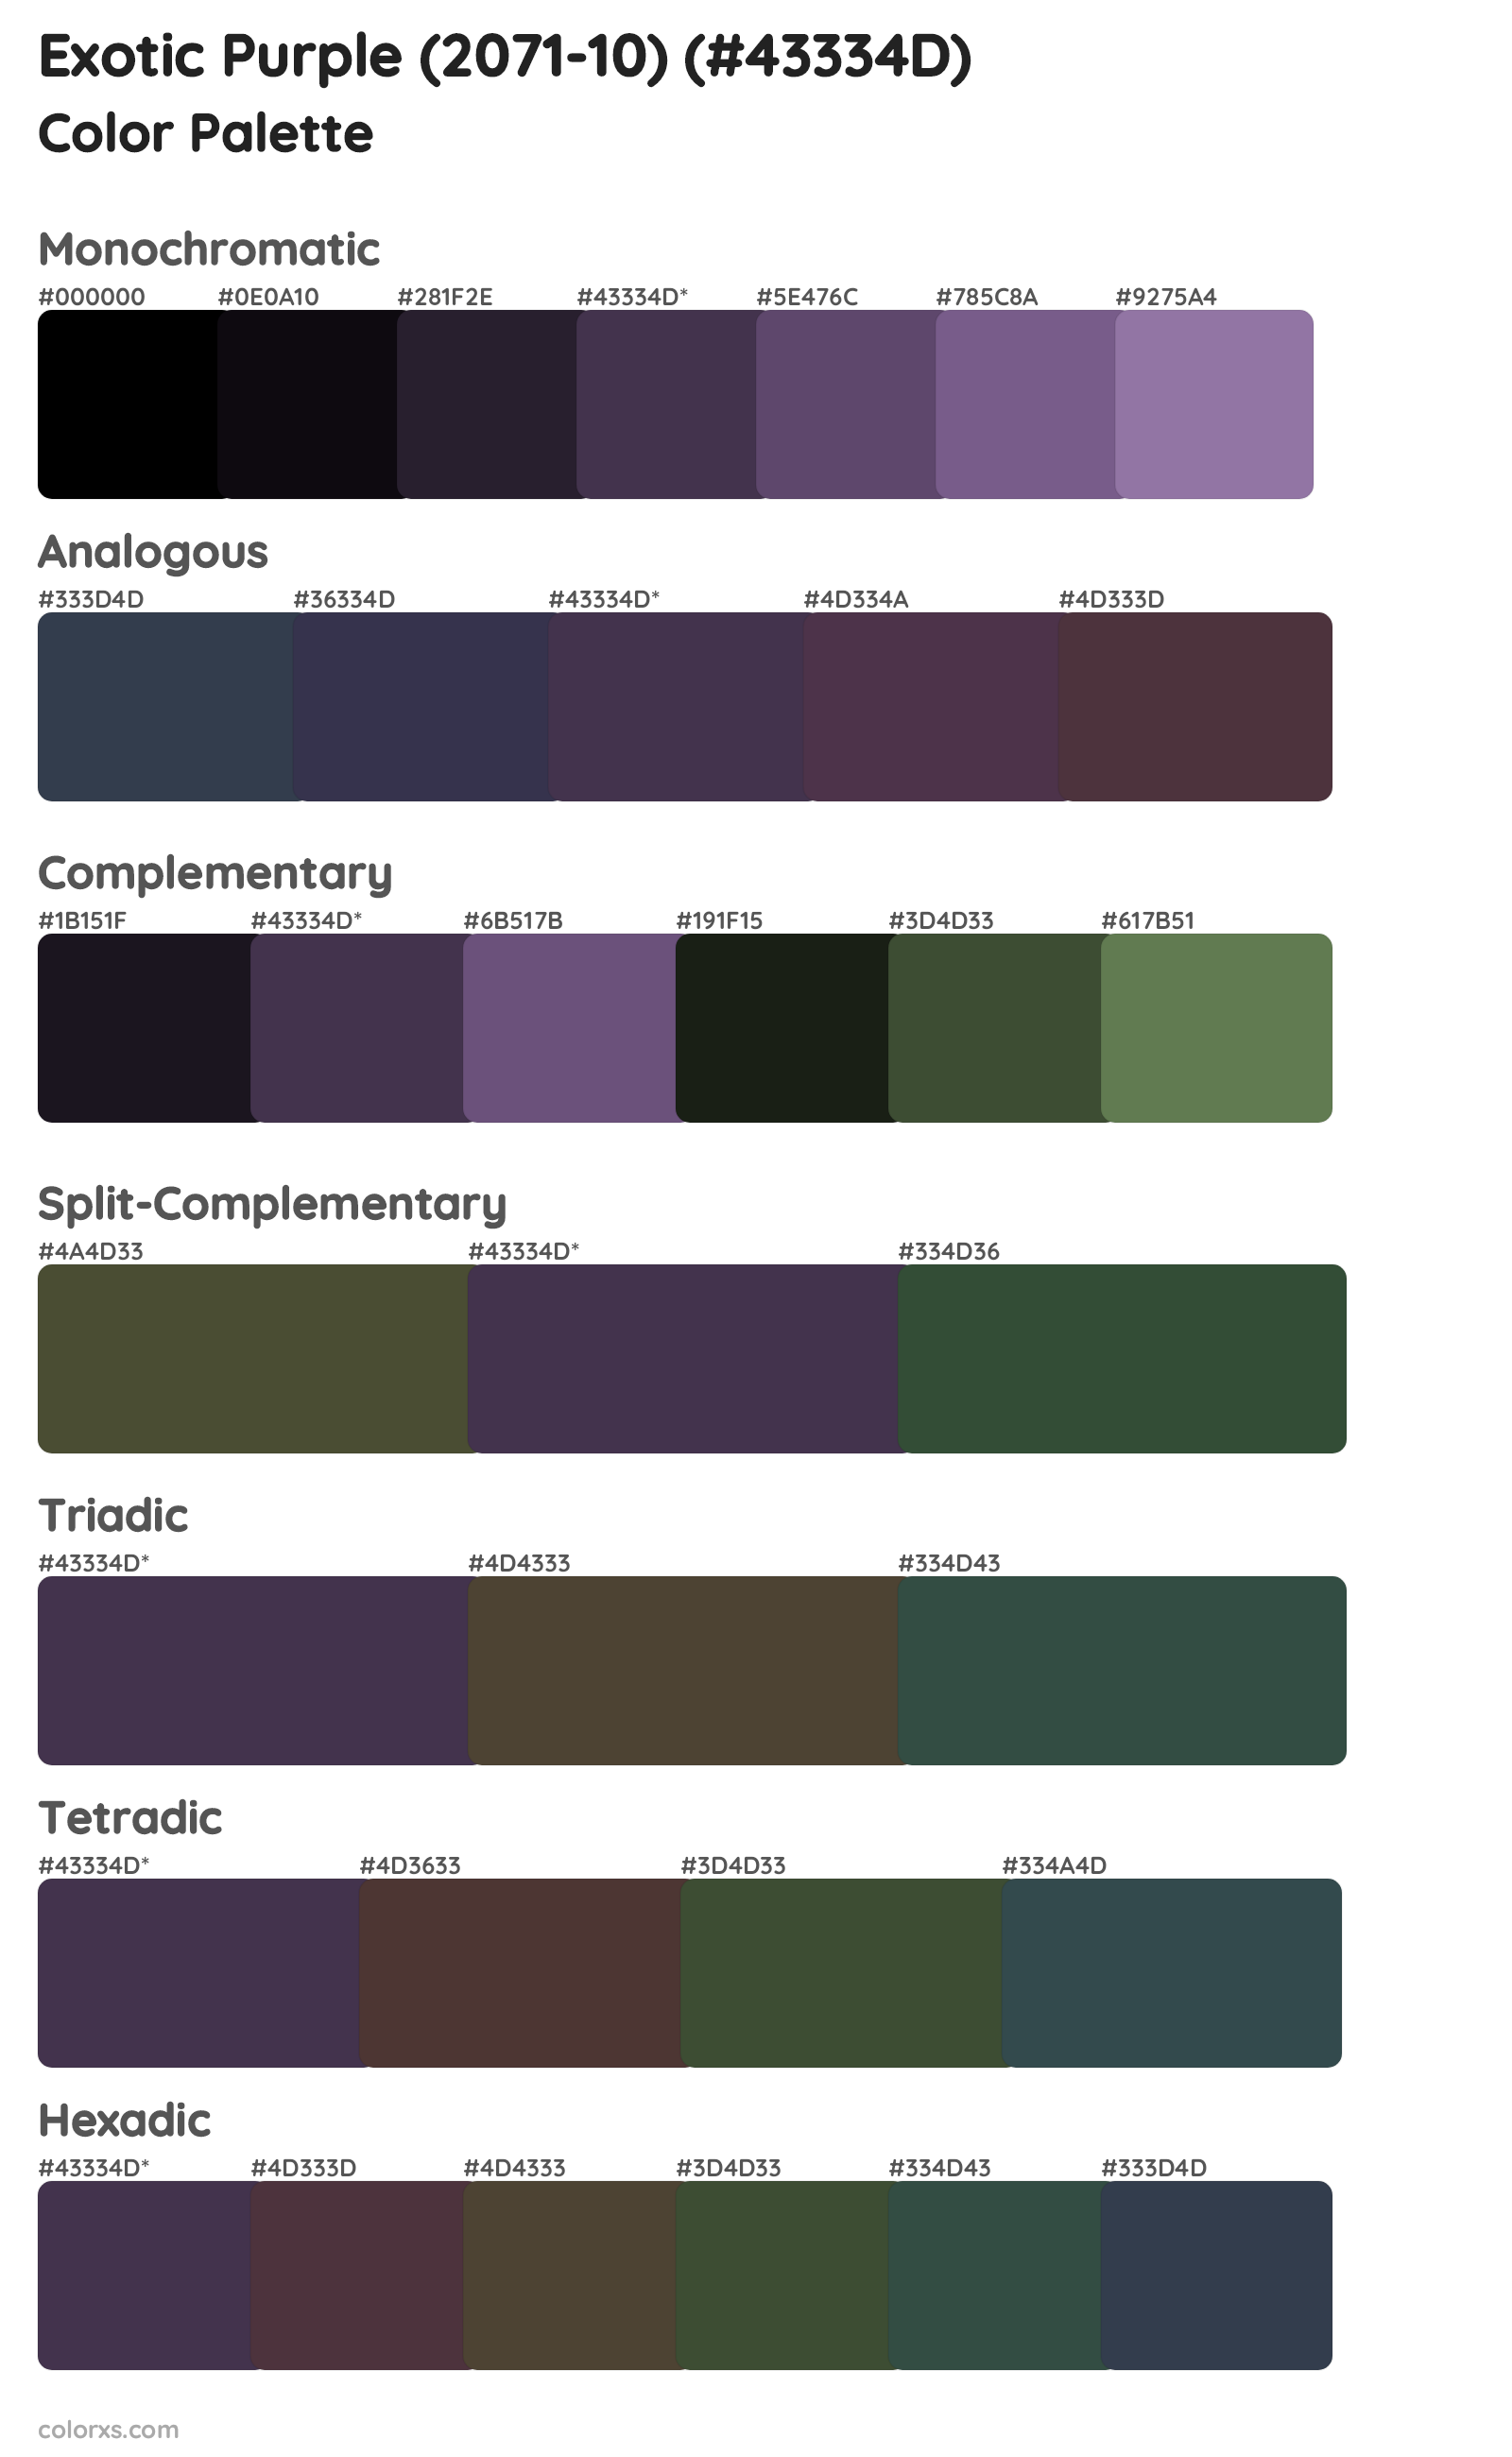 Exotic Purple (2071-10) Color Scheme Palettes